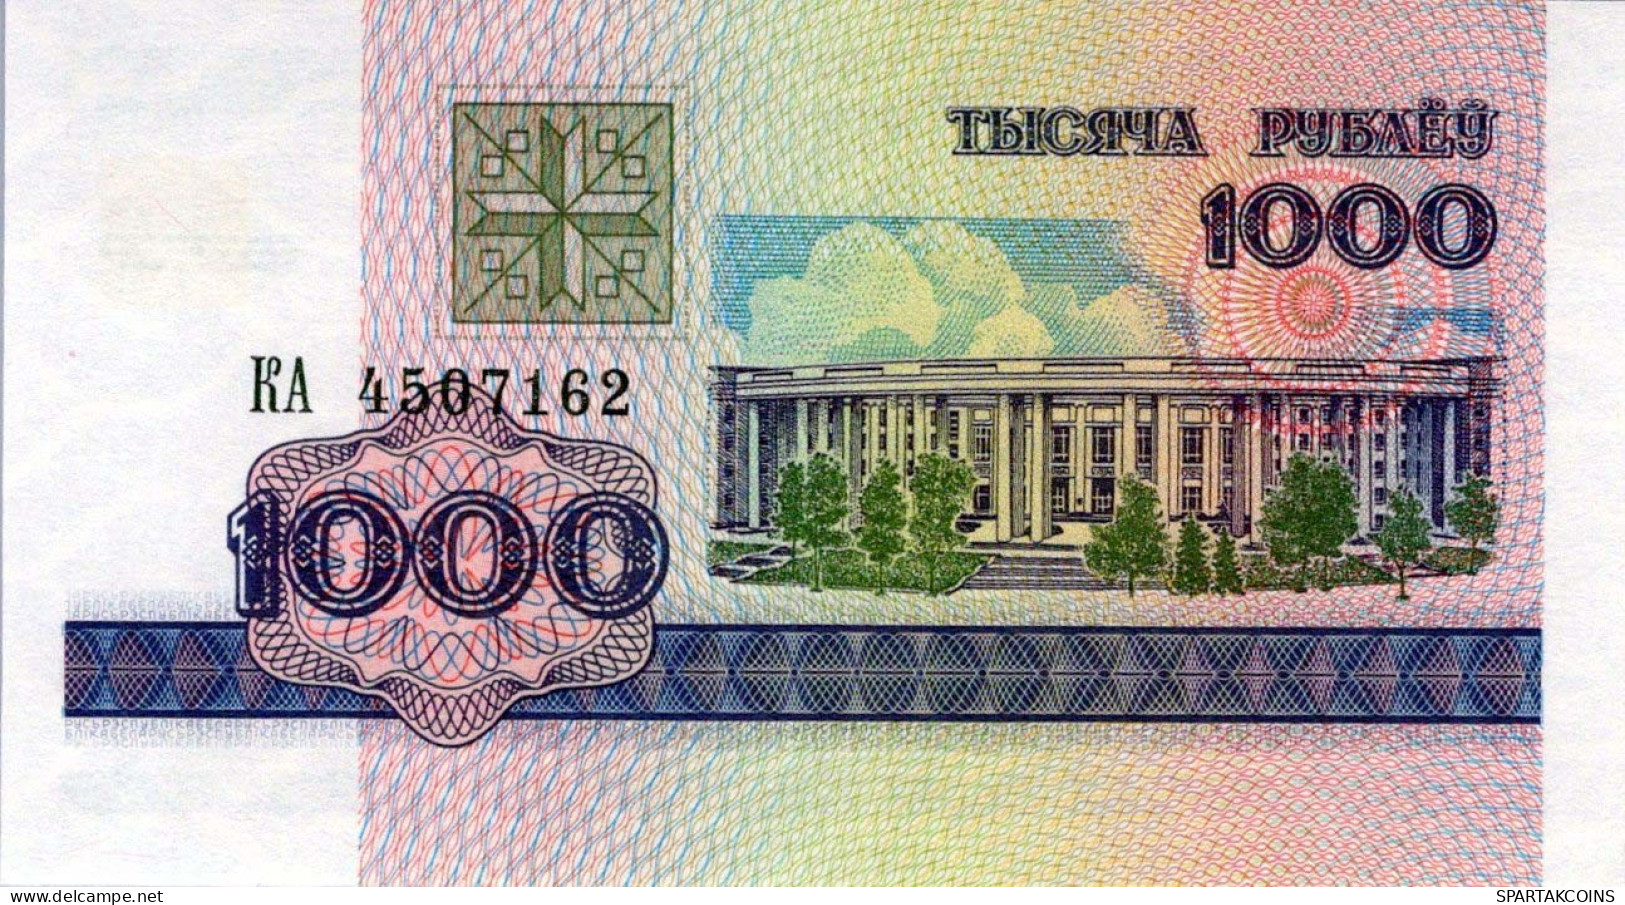 1000 RUBLES 1998 BELARUS Papiergeld Banknote #PJ292 - [11] Local Banknote Issues